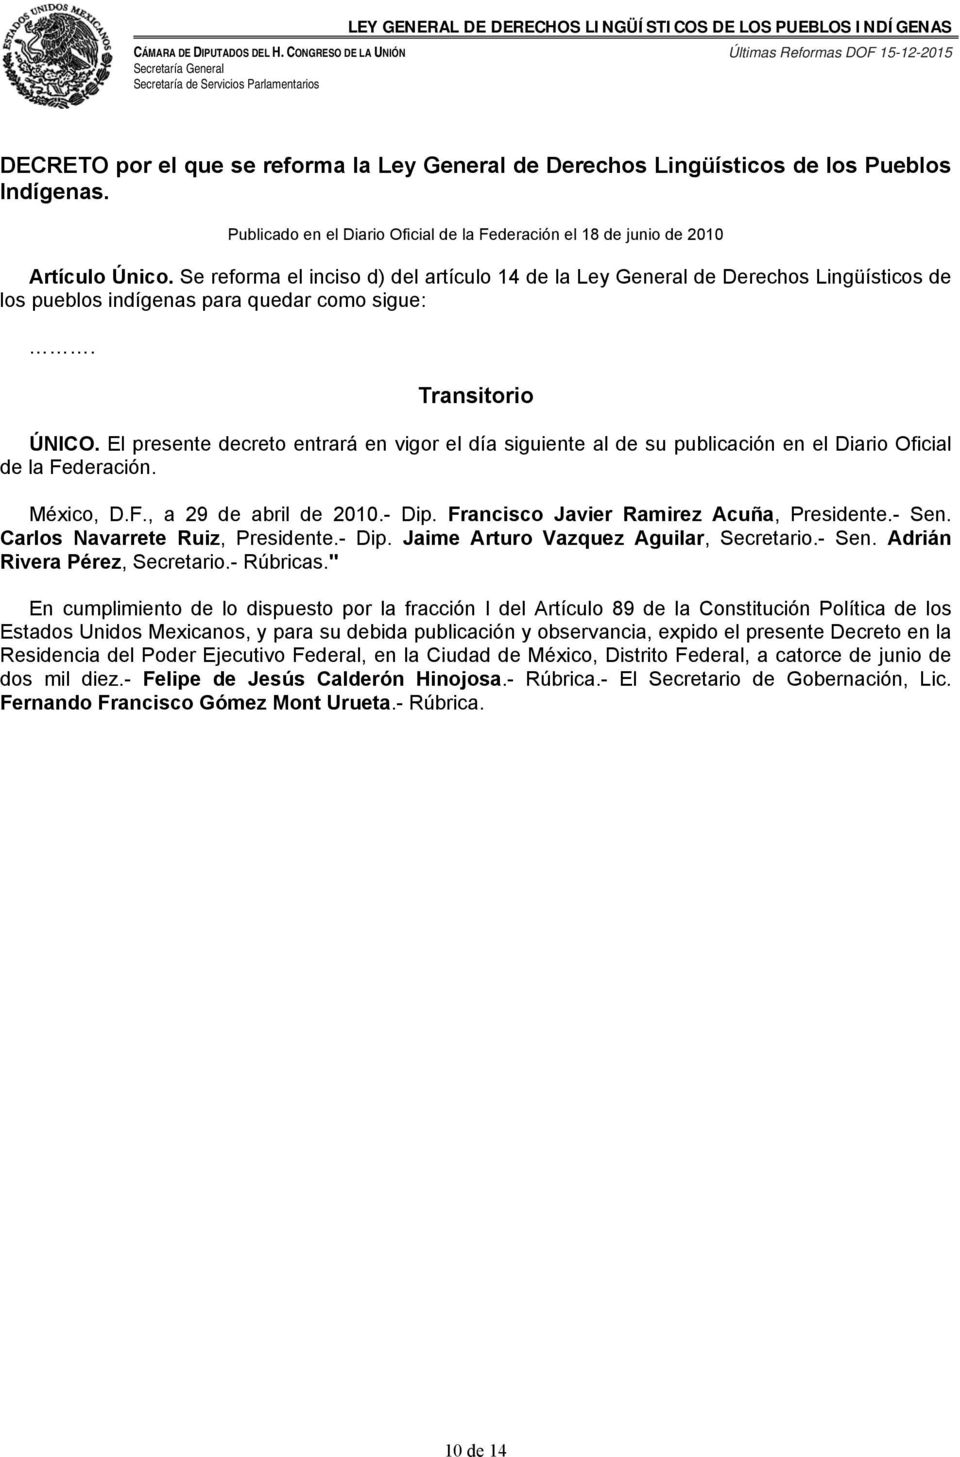 El presente decreto entrará en vigor el día siguiente al de su publicación en el Diario Oficial de la Federación. México, D.F., a 29 de abril de 2010.- Dip. Francisco Javier Ramirez Acuña, Presidente.